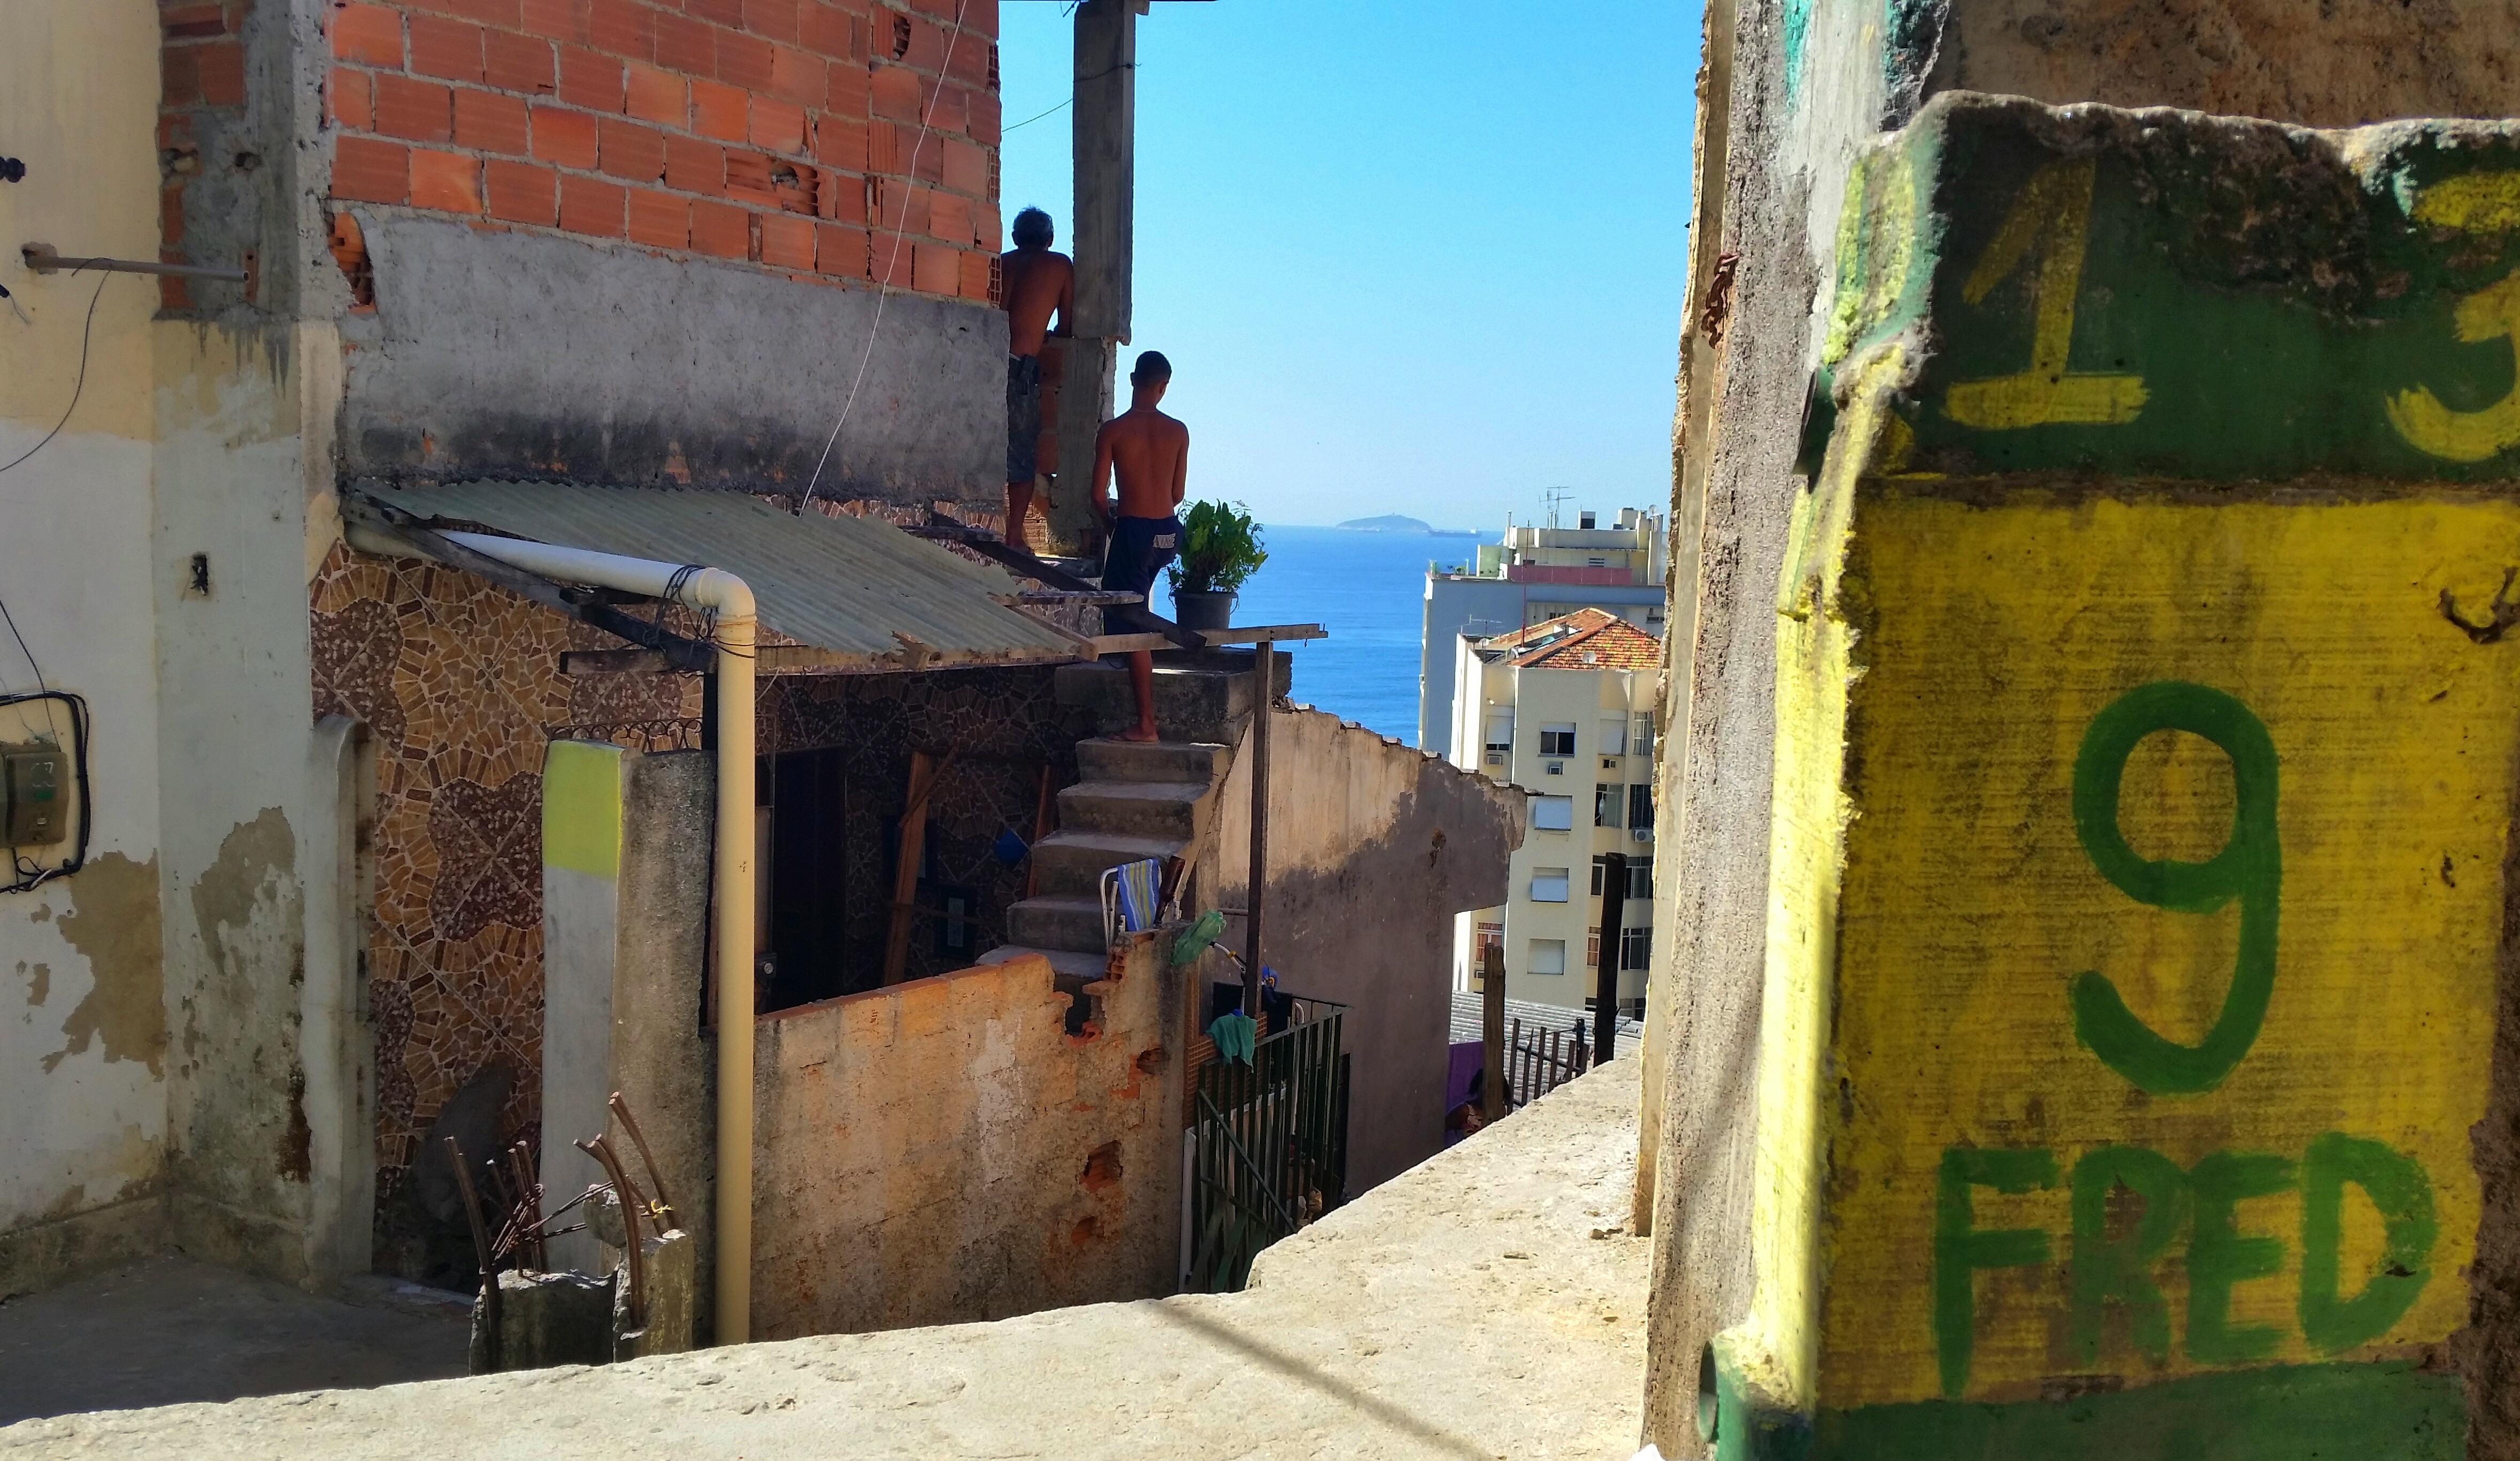 Chapéu Mangueira favela, Rio de Janeiro